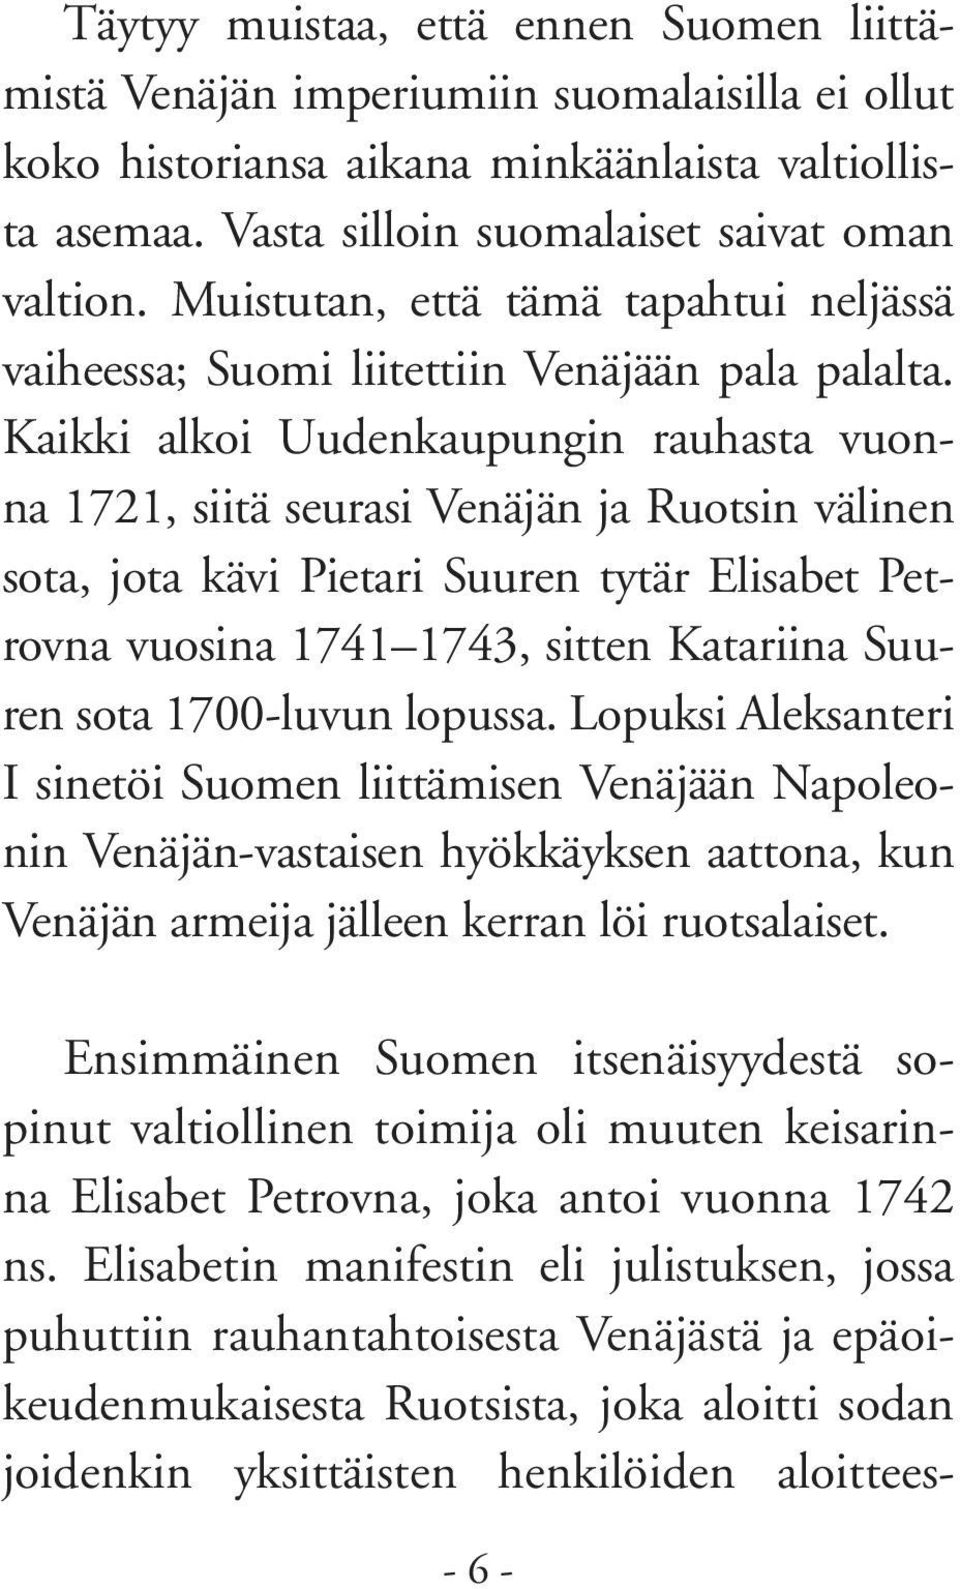 Kaikki alkoi Uudenkaupungin rauhasta vuonna 1721, siitä seurasi Venäjän ja Ruotsin välinen sota, jota kävi Pietari Suuren tytär Elisabet Petrovna vuosina 1741 1743, sitten Katariina Suuren sota